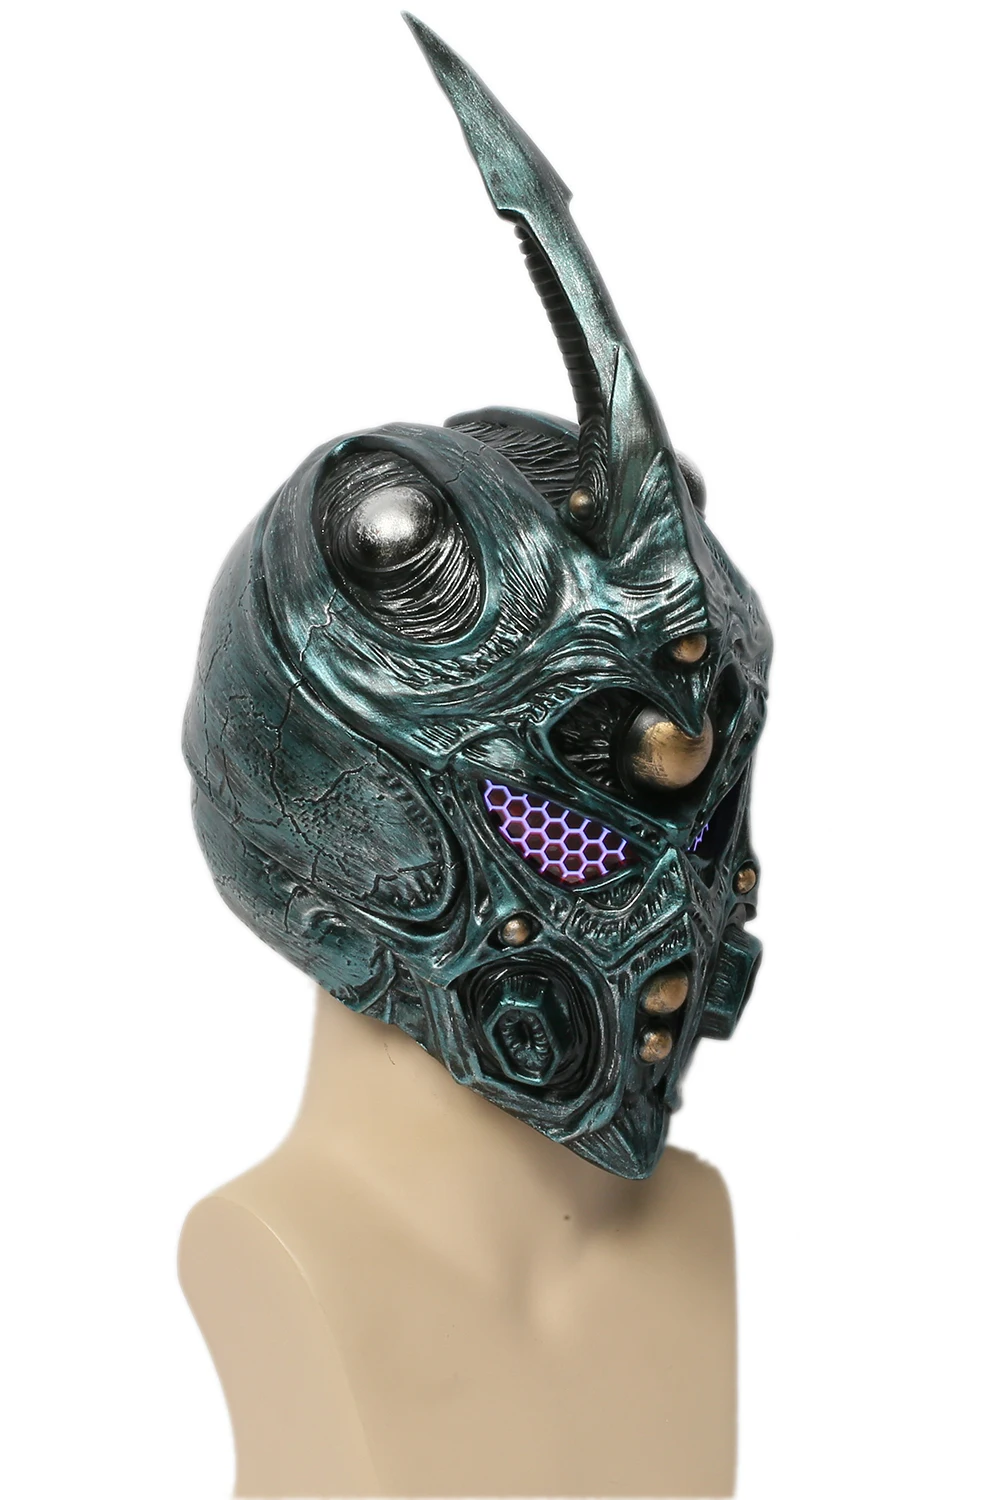 Coslive био бустер Броня шлем маски для косплей костюм реквизит съемный Рог полная голова аксессуары для Хэллоуина